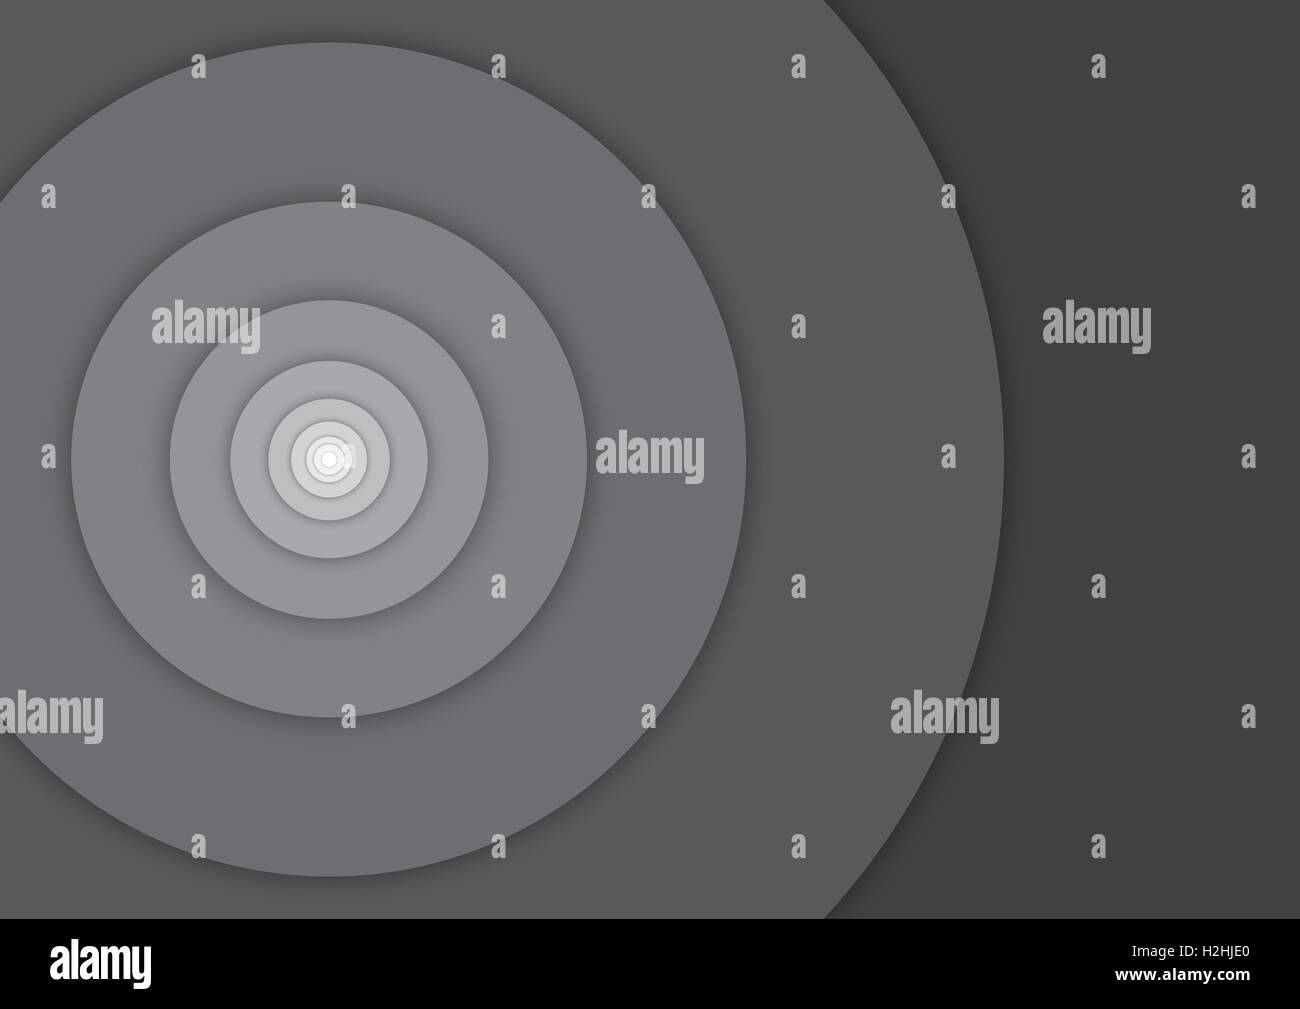 [JPEG] Hintergrund - Kreise Fibonacci - schwarz / weiß monochromen Graustufen - Material-Design - Vektor-illustration Stockfoto